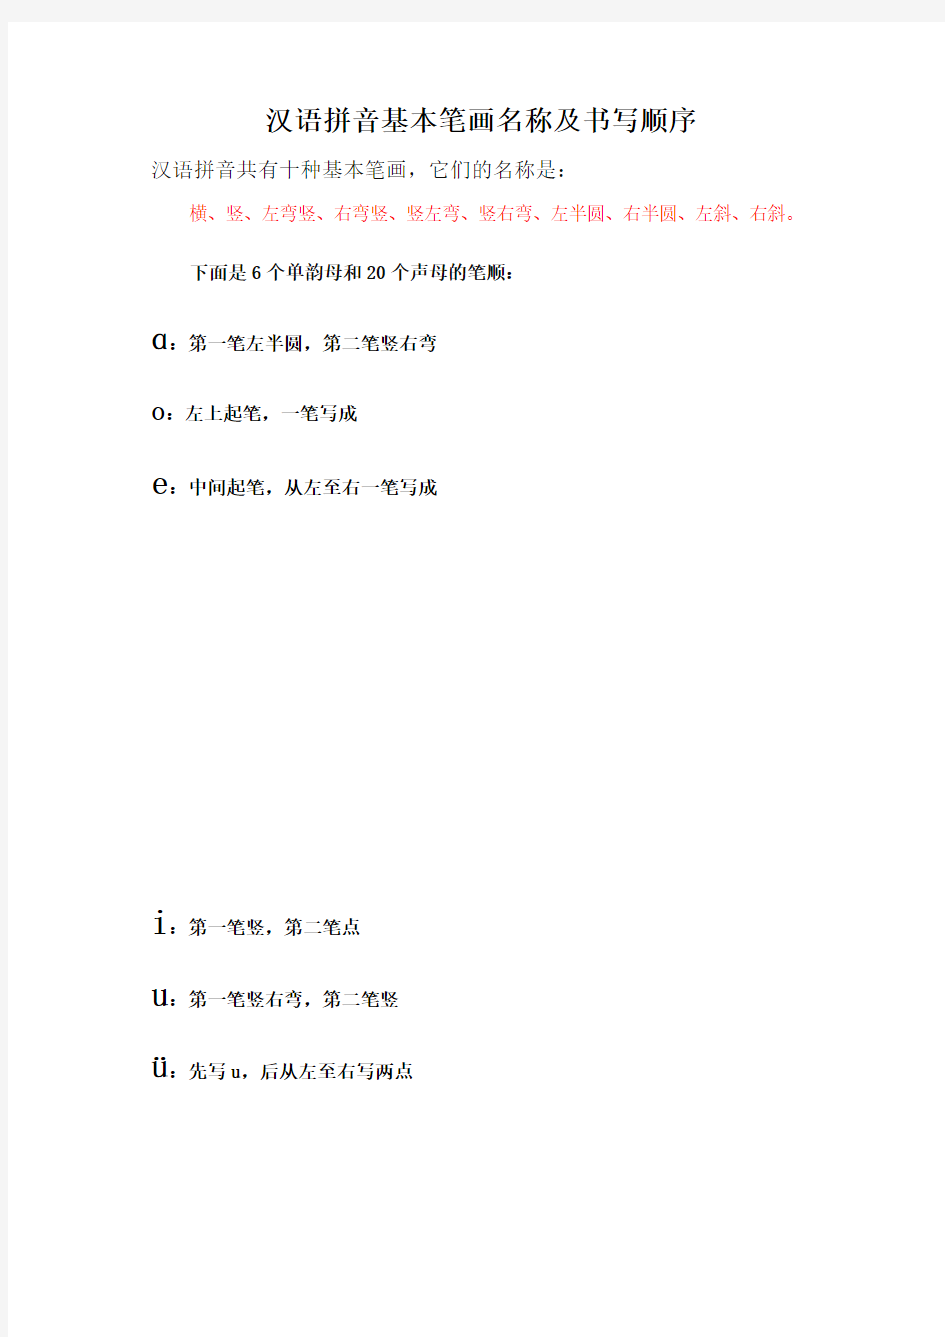 汉语拼音基本笔画名称及书写顺序